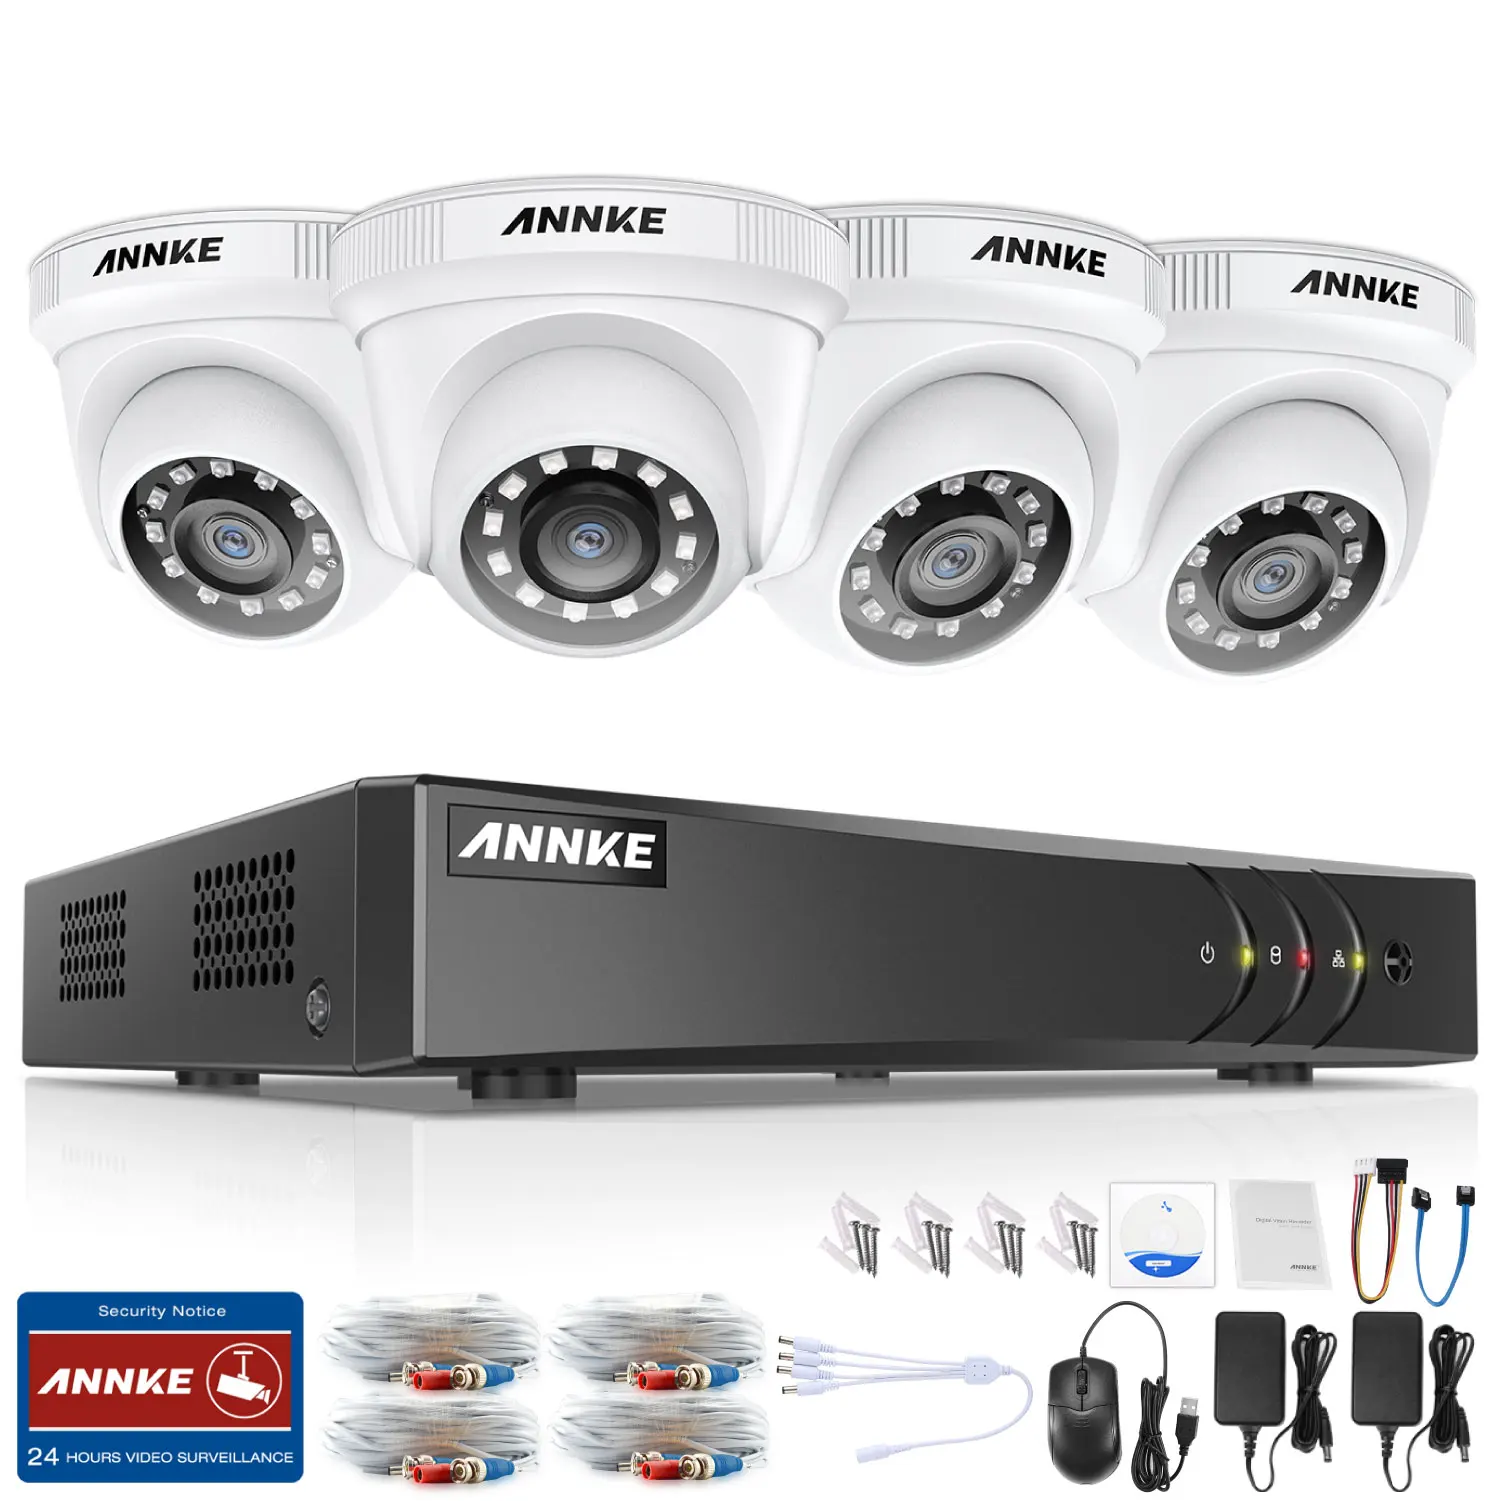 ANNKE 1080P 8CH домашняя видео система безопасности Lite H.264+ 5в1 1080N DVR 4 шт 1080P умная ИК купольная уличная камера видеонаблюдения